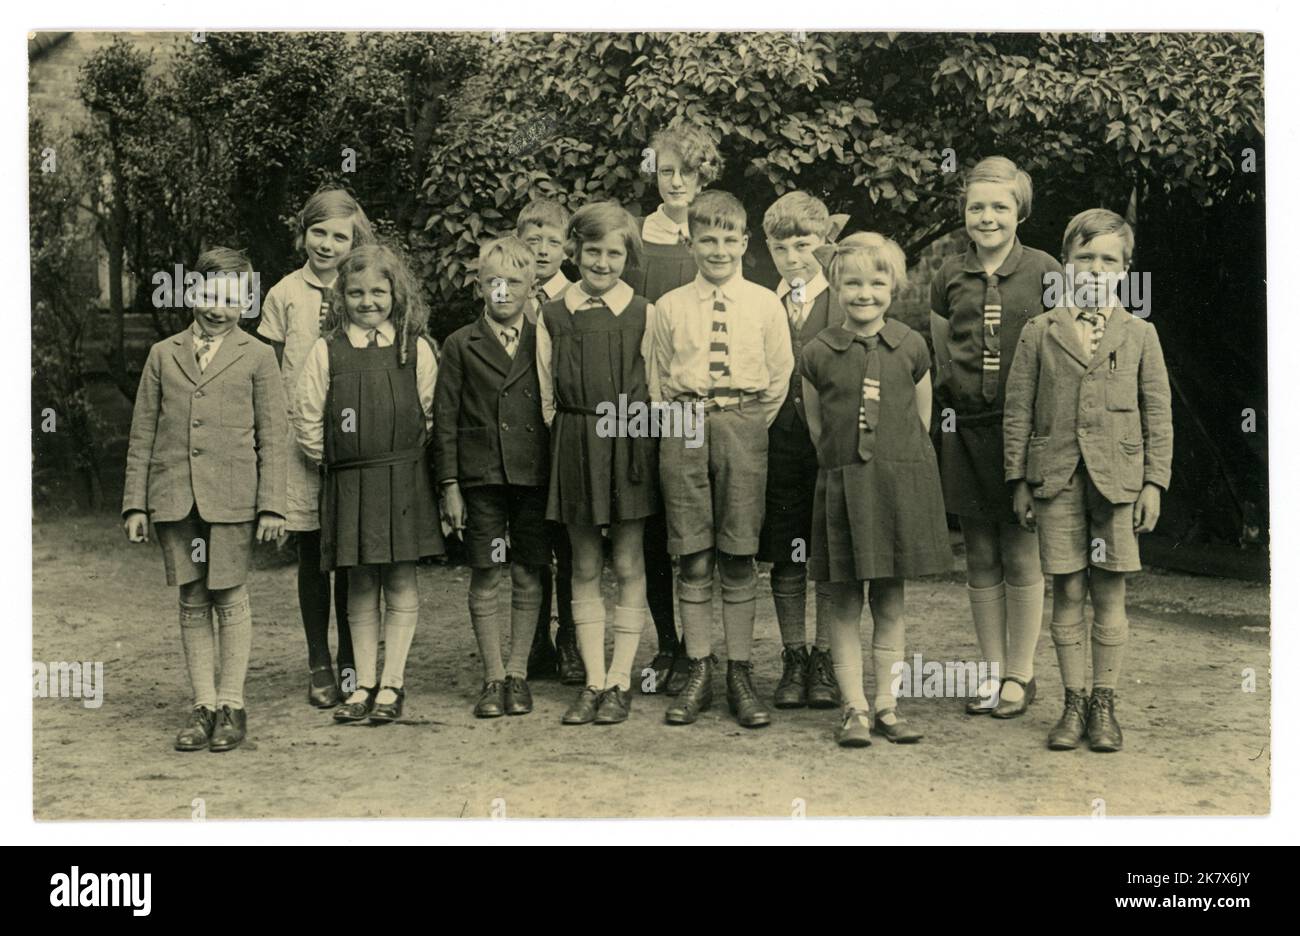 Original, très clair, carte postale, de l'époque WW2, des années 1920, l'époque des années 1930 de groupe d'enfants d'école posant pour une photo dans leur uniforme d'école à l'extérieur. ROYAUME-UNI Banque D'Images